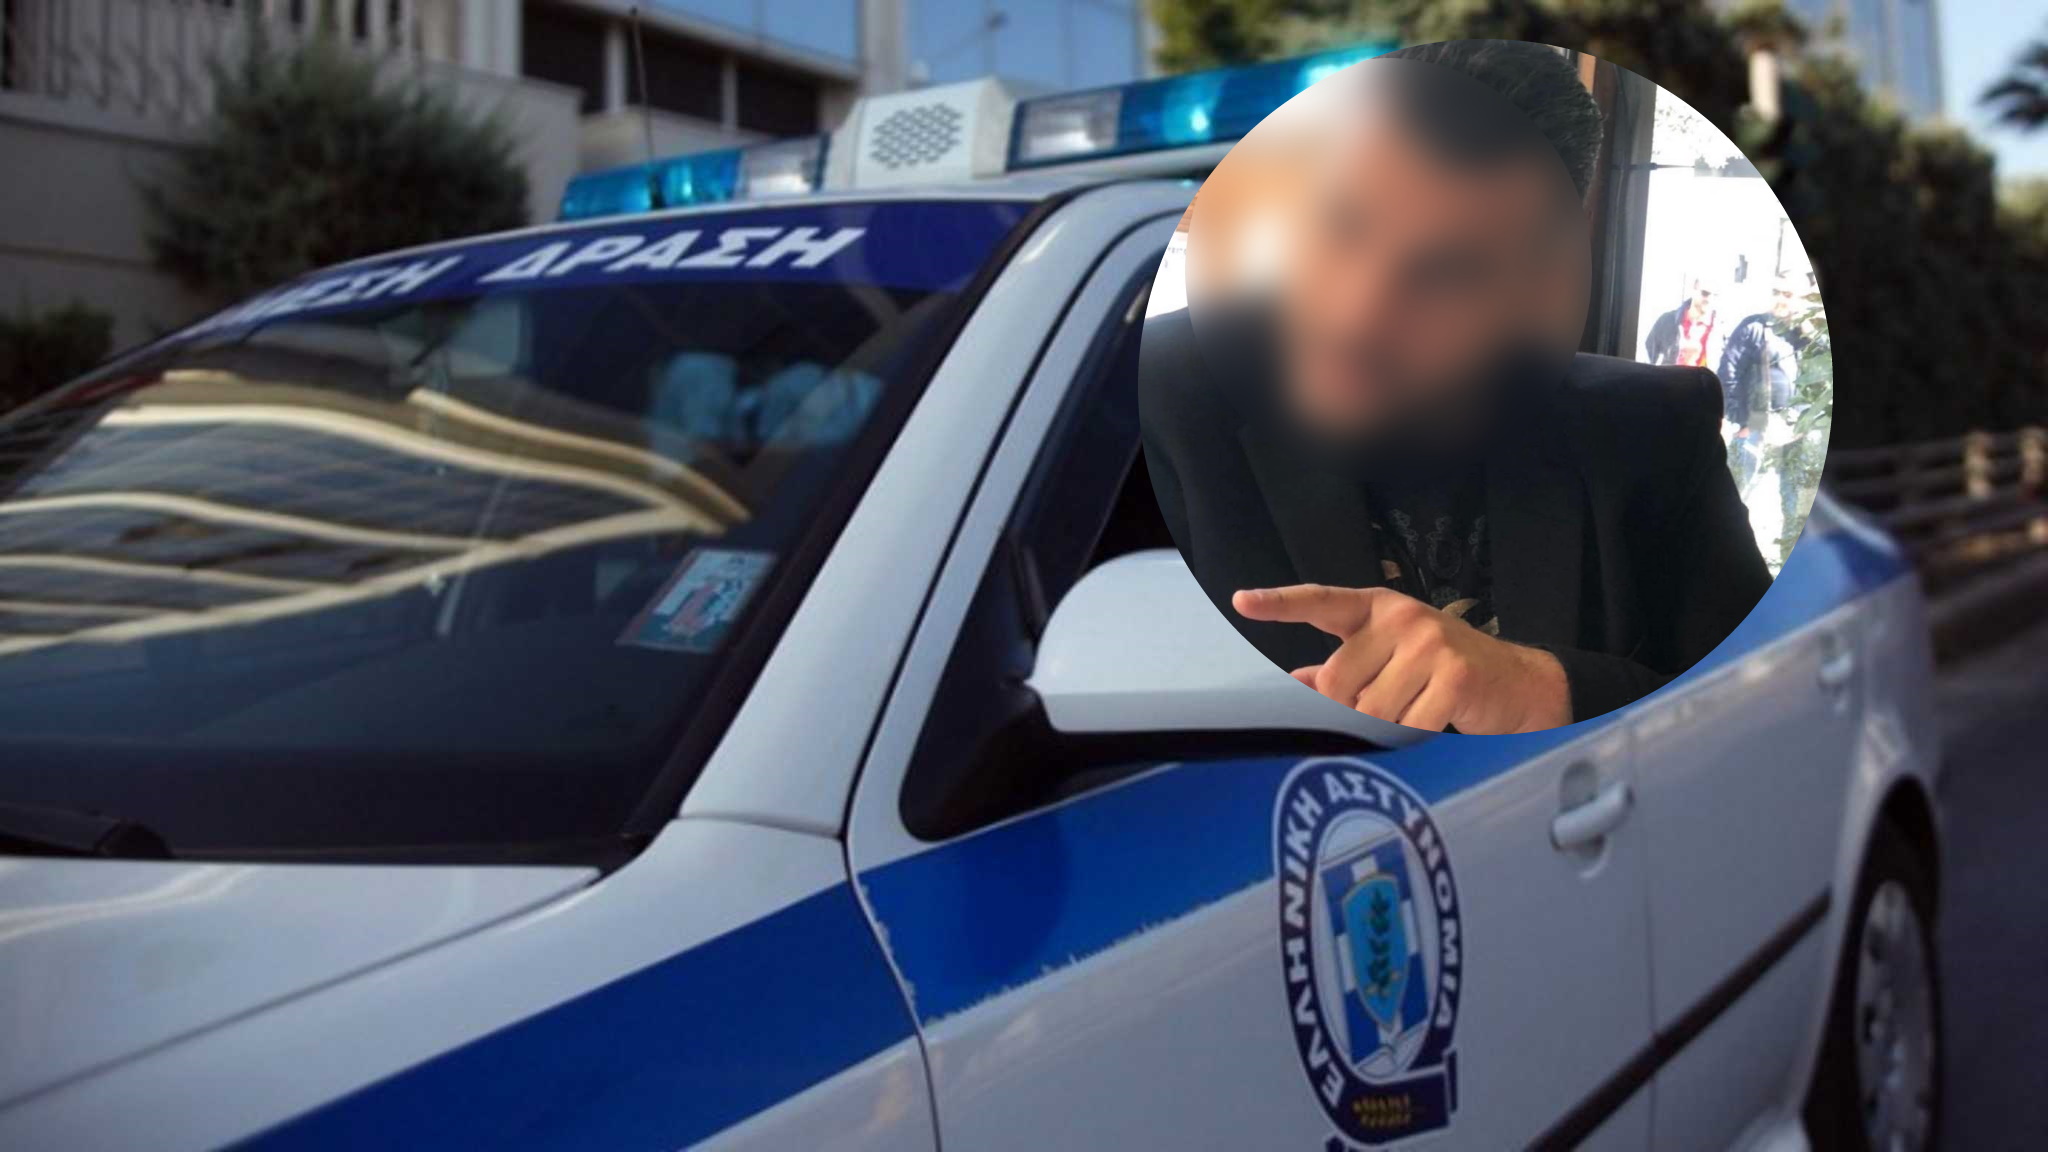 Κινηματογραφική απαγωγή επιχειρηματία έξω από το σπίτι του στο Ντράφι – Συναγερμός στην ΕΛ.ΑΣ.